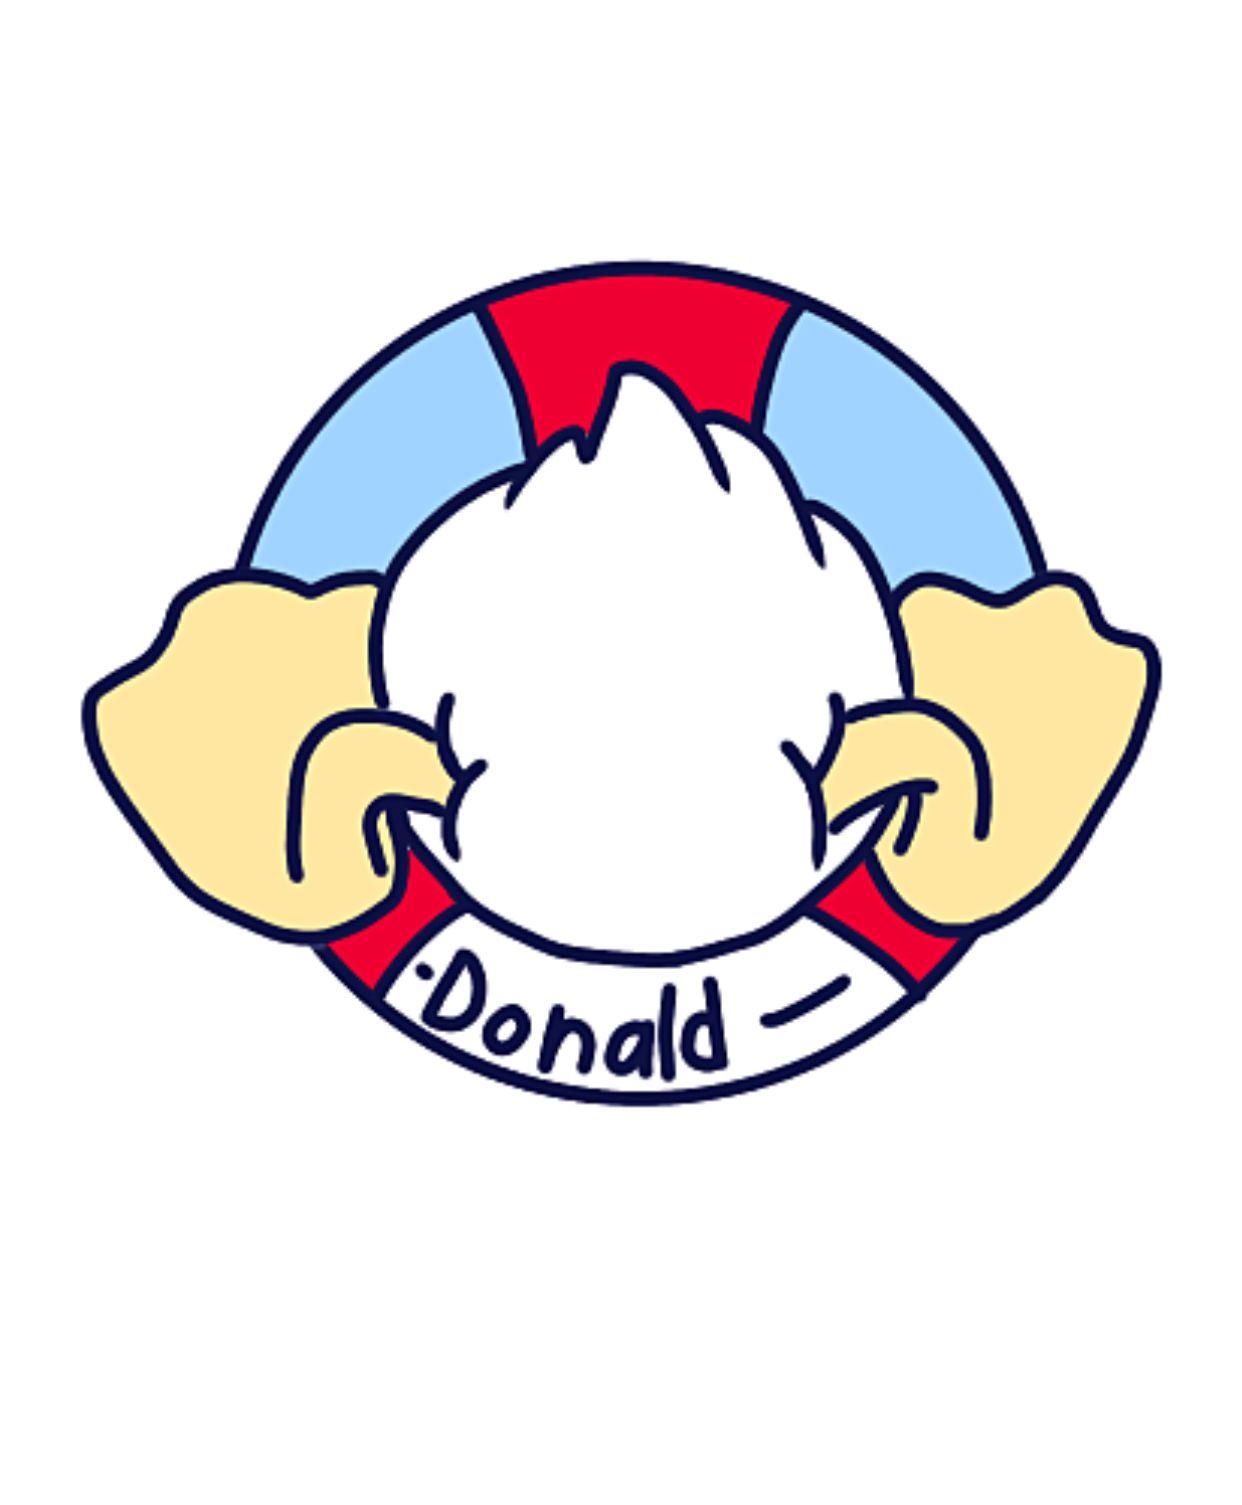 Donald Duck Logo - Donald Duck | Donald Duck | Donald duck, Disney wallpaper, Disney images